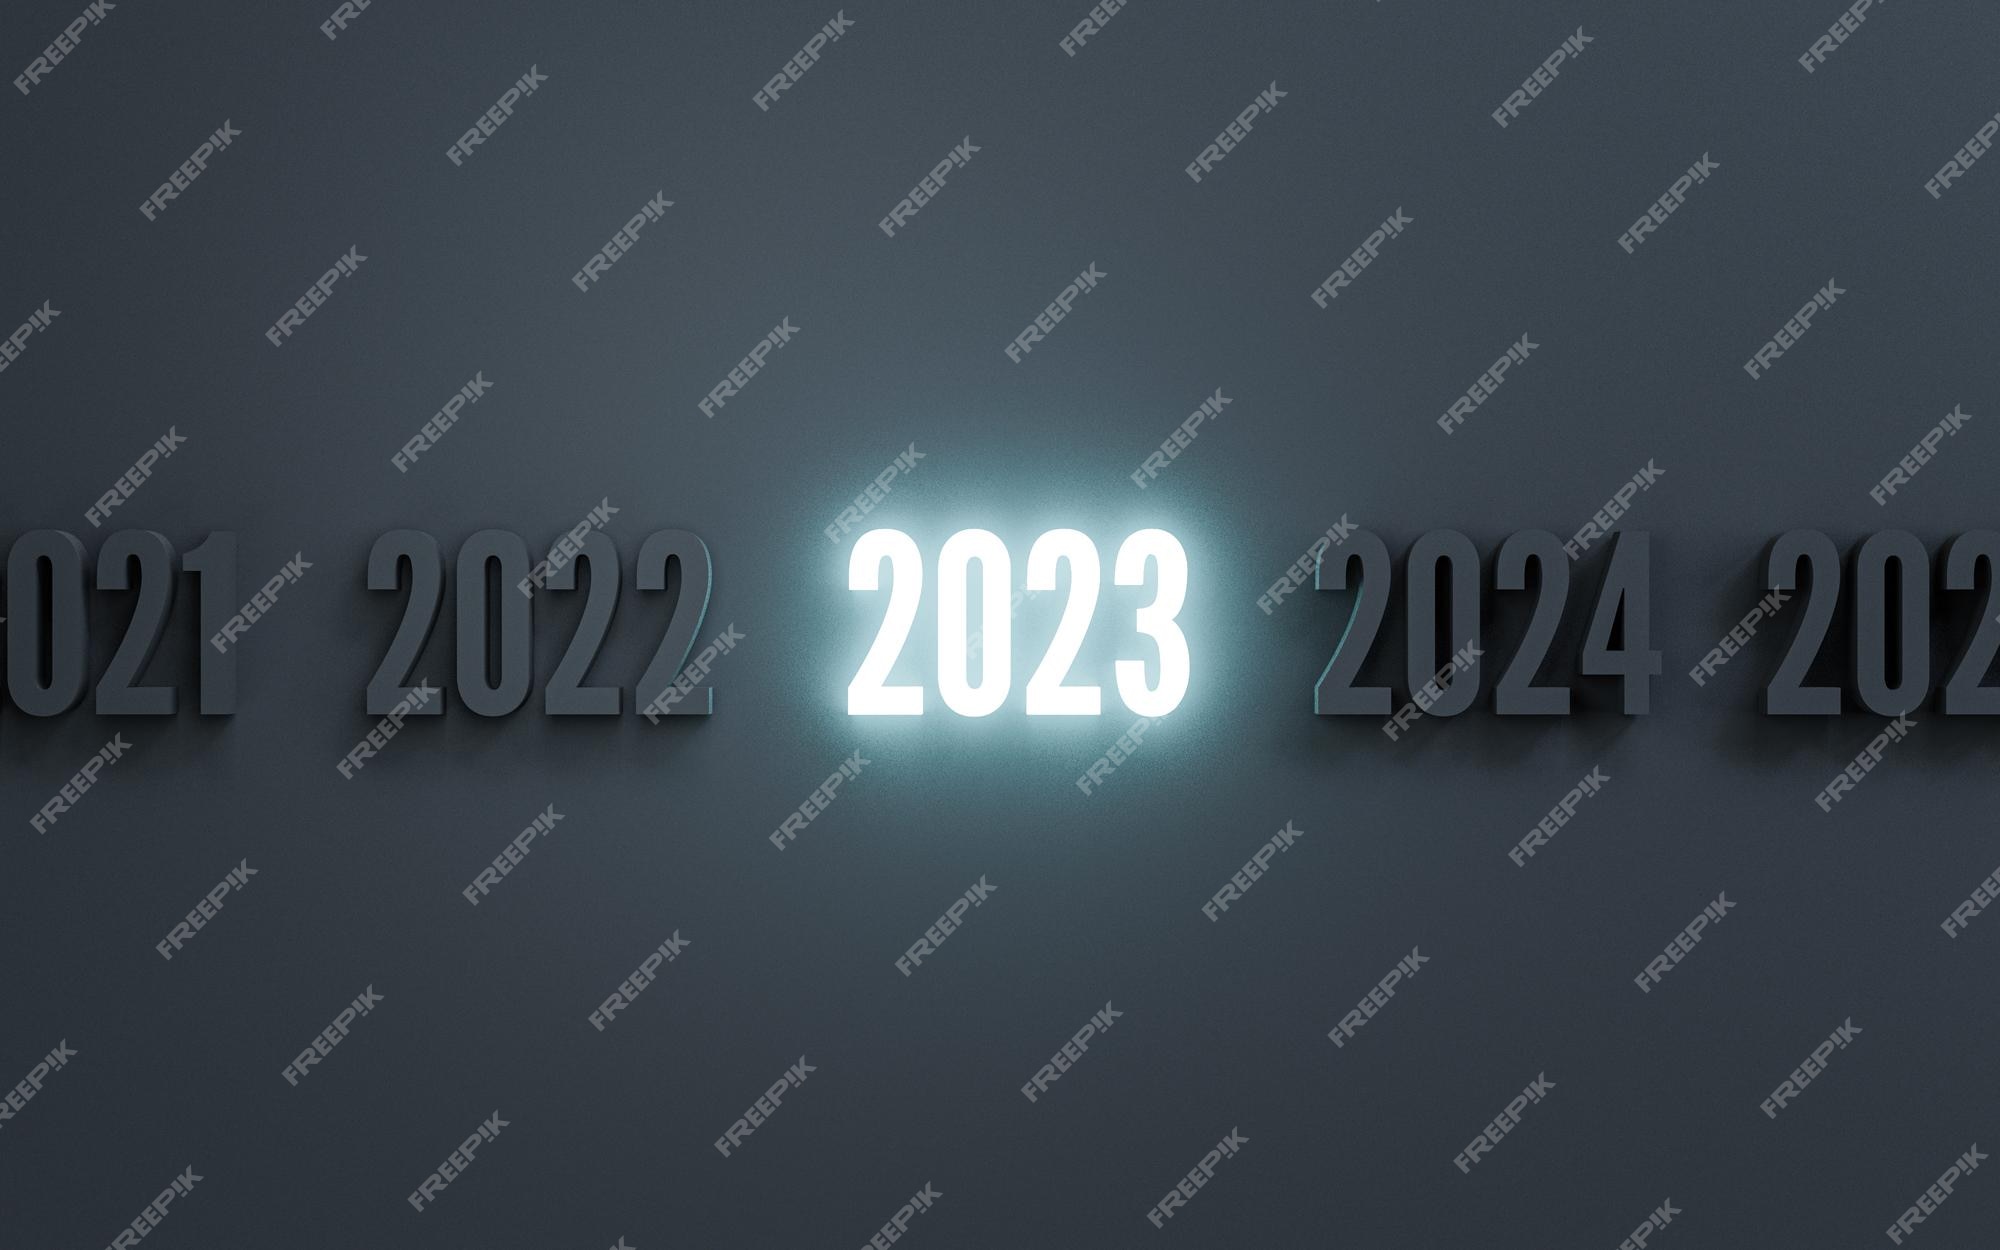 Năm 2024 sáng chói: Hãy cùng nhìn vào tương lai và chiêm ngưỡng những hình ảnh về năm 2024 sáng chói với những tia sáng tràn đầy hy vọng. Bạn sẽ cảm thấy cực kì hào hứng khi nhìn thấy tương lai tươi sáng và đầy triển vọng.